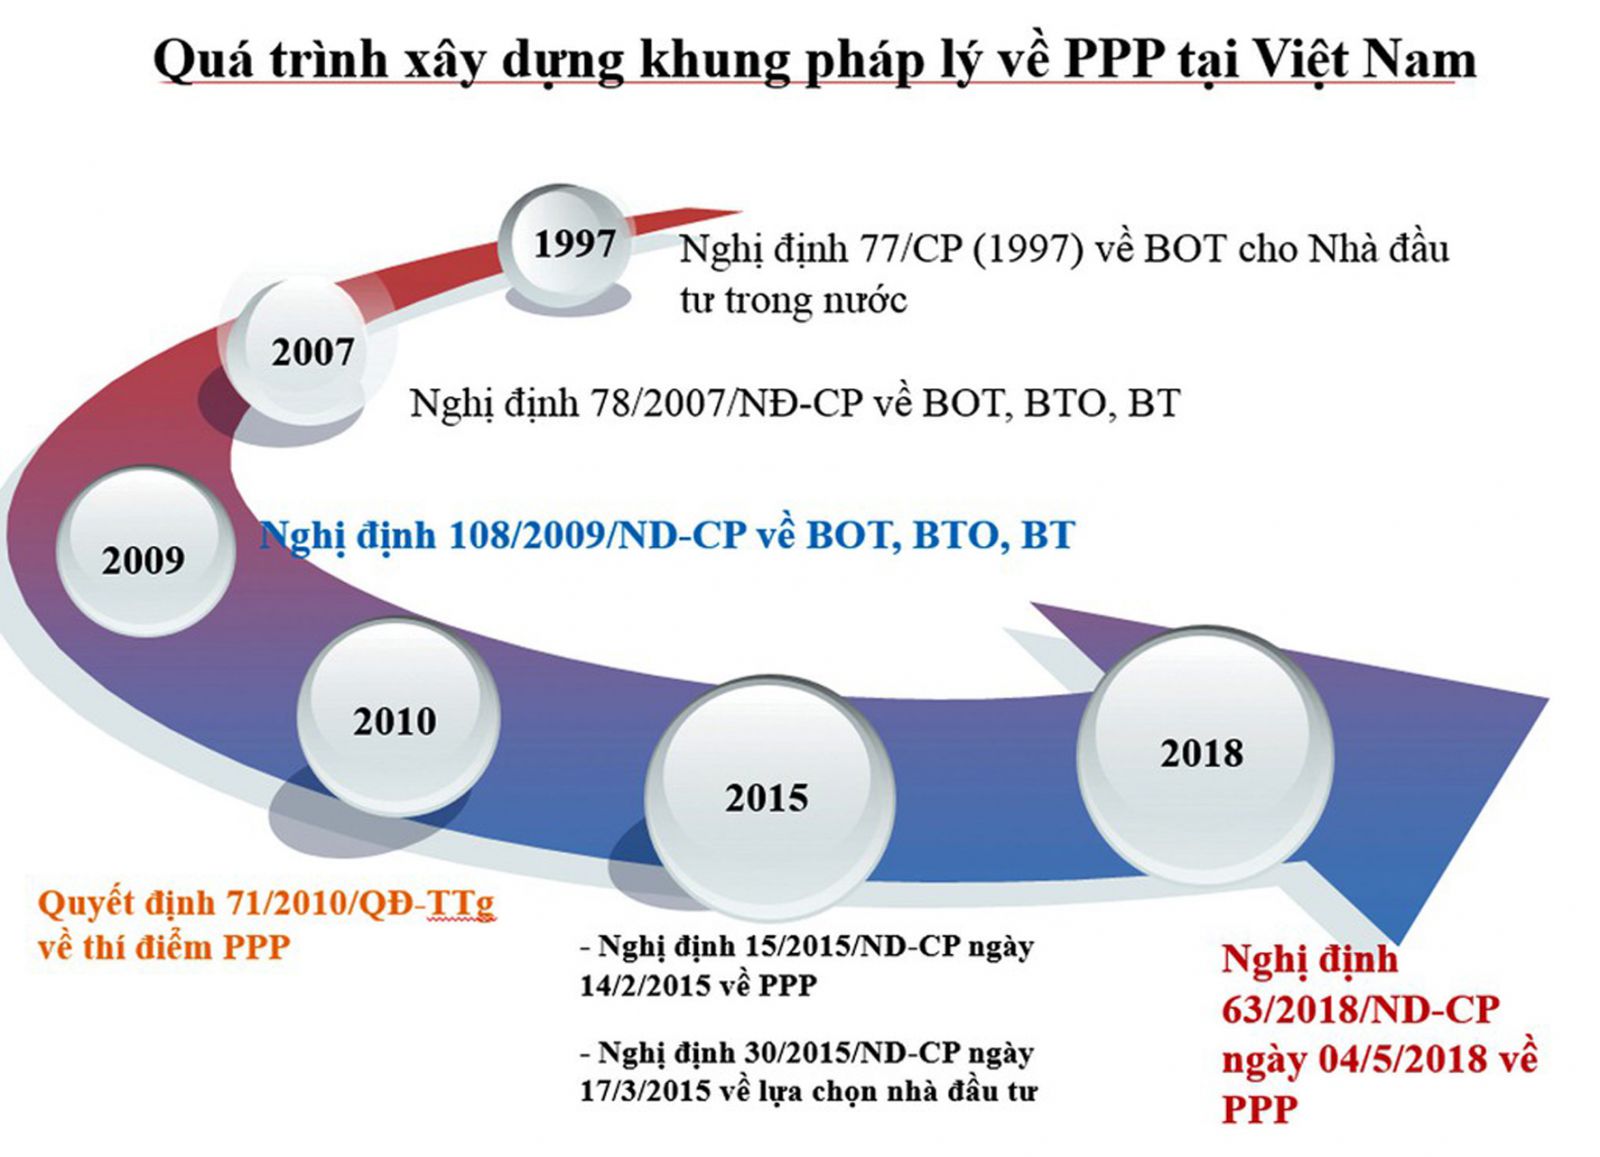 p/Quá trình xây dựng khung pháp lý về PPP tại Việt Nam.